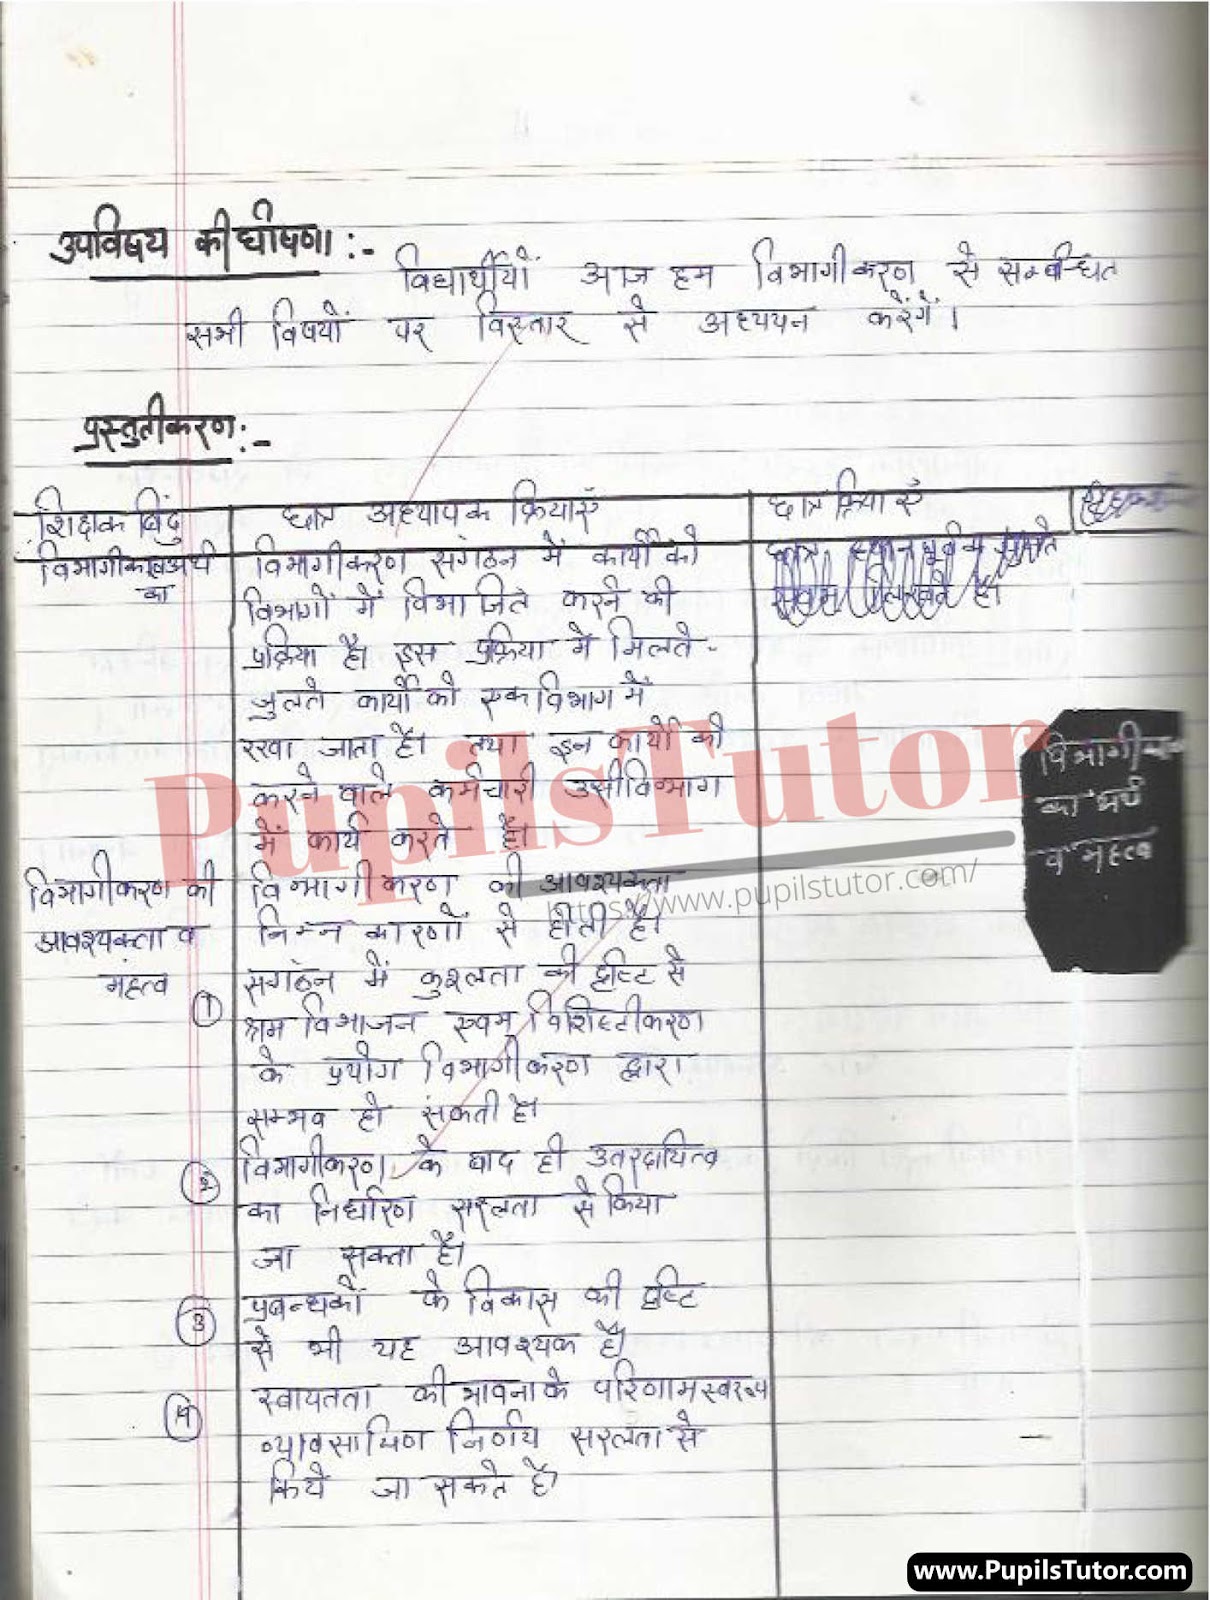 Discussion Skill Vibhagikaran Lesson Plan For B.Ed And Deled In Hindi Free Download PDF And PPT (Power Point Presentation And Slides) | बीएड और डीएलएड के लिए डिस्कशन कौशल पर विभागीकरण कक्षा 9 से 12 के लेसन प्लान की पीडीऍफ़ और पीपीटी फ्री में डाउनलोड करे| – (Page And PDF Number 2) – pupilstutor